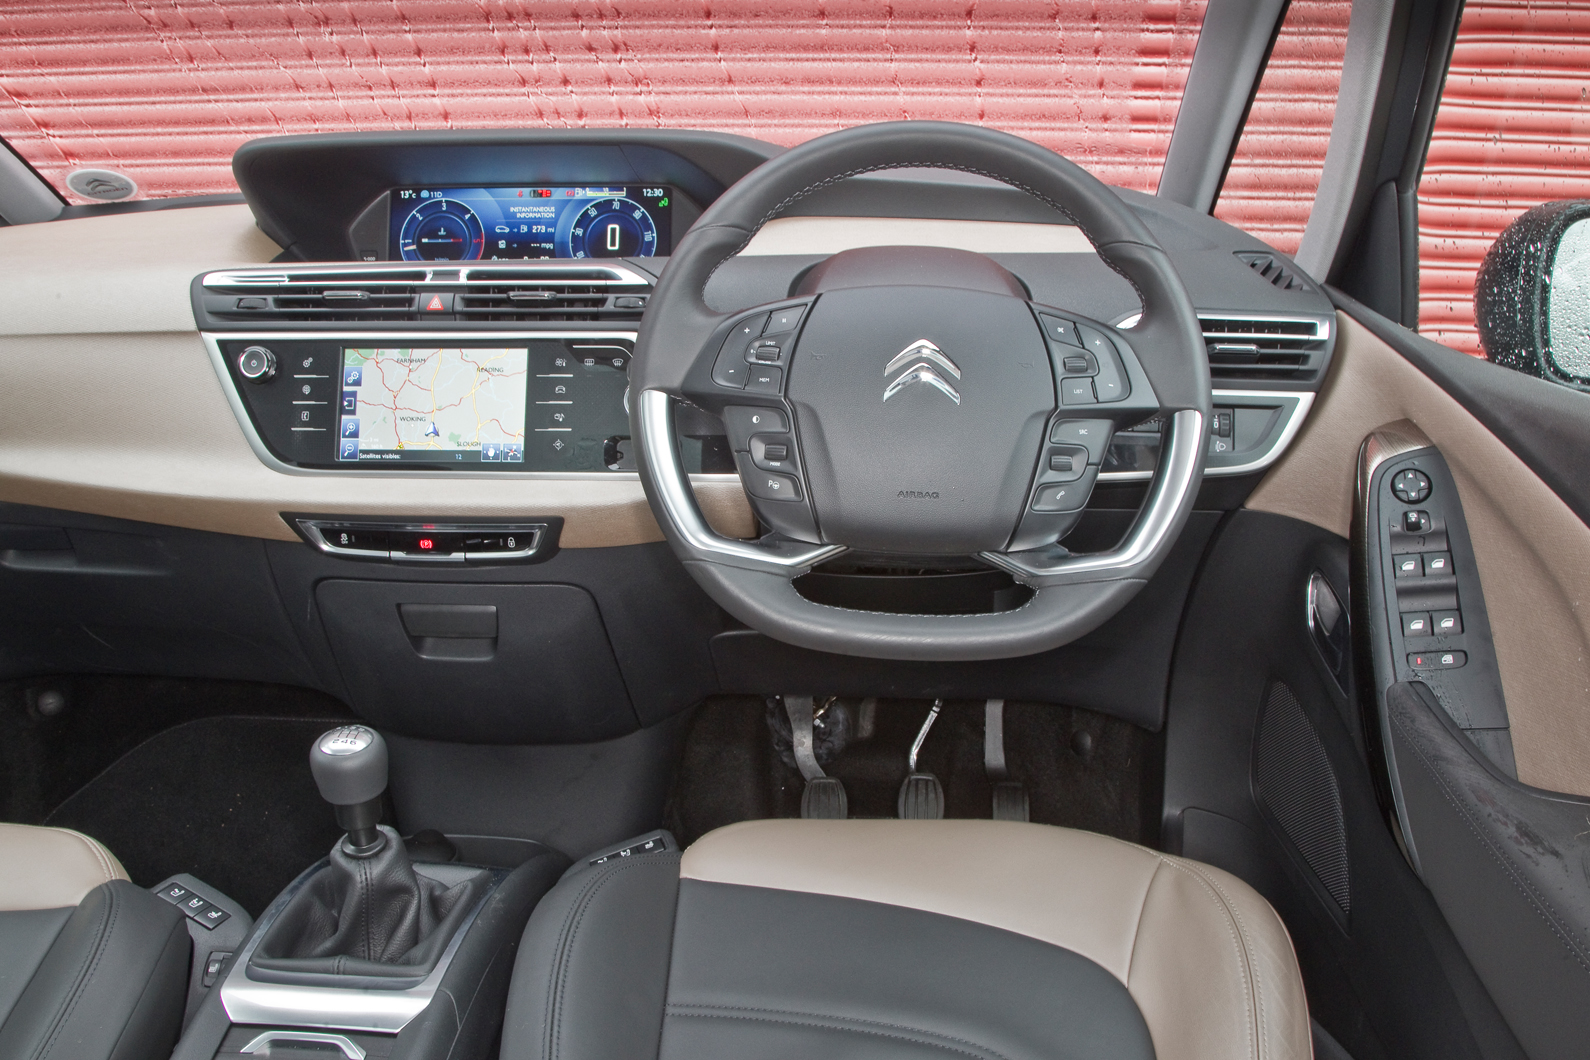 Citroën Grand C4 Picasso interior